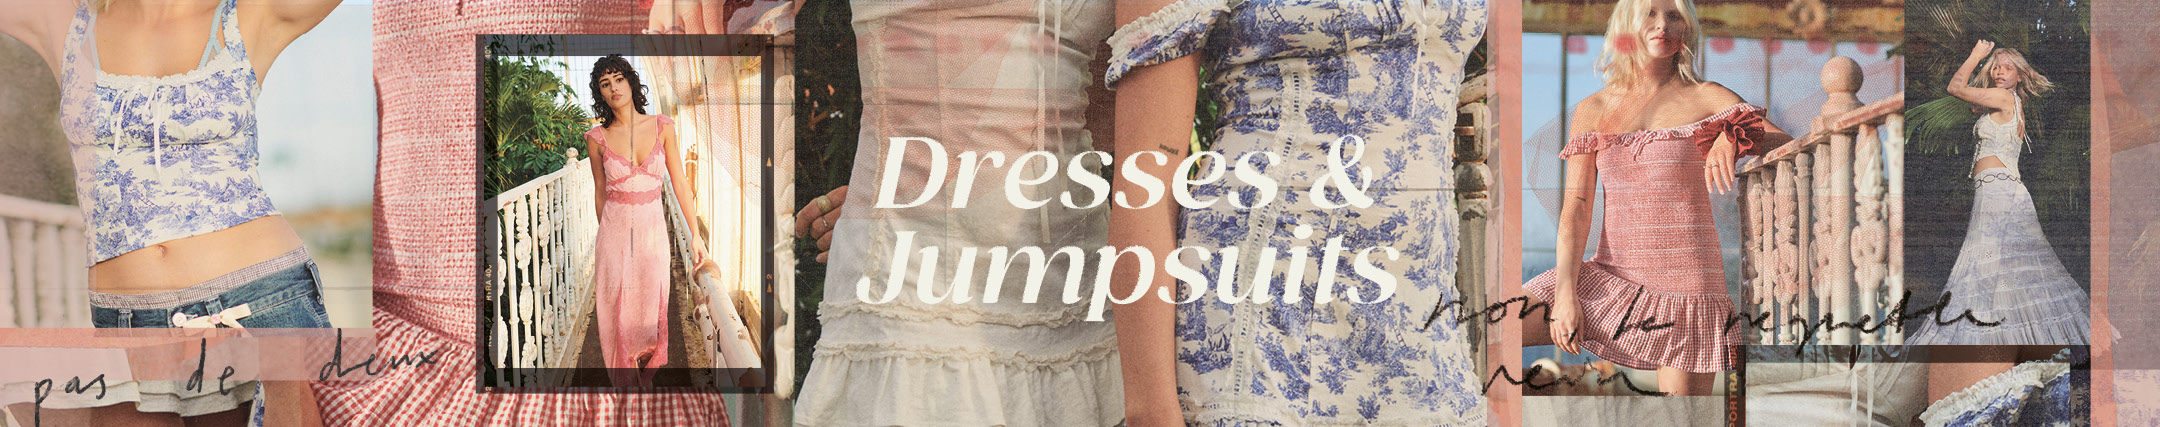 Dresses & Jumpsuits, Midi, Maxi, Mini, Casual, & Party Dresses